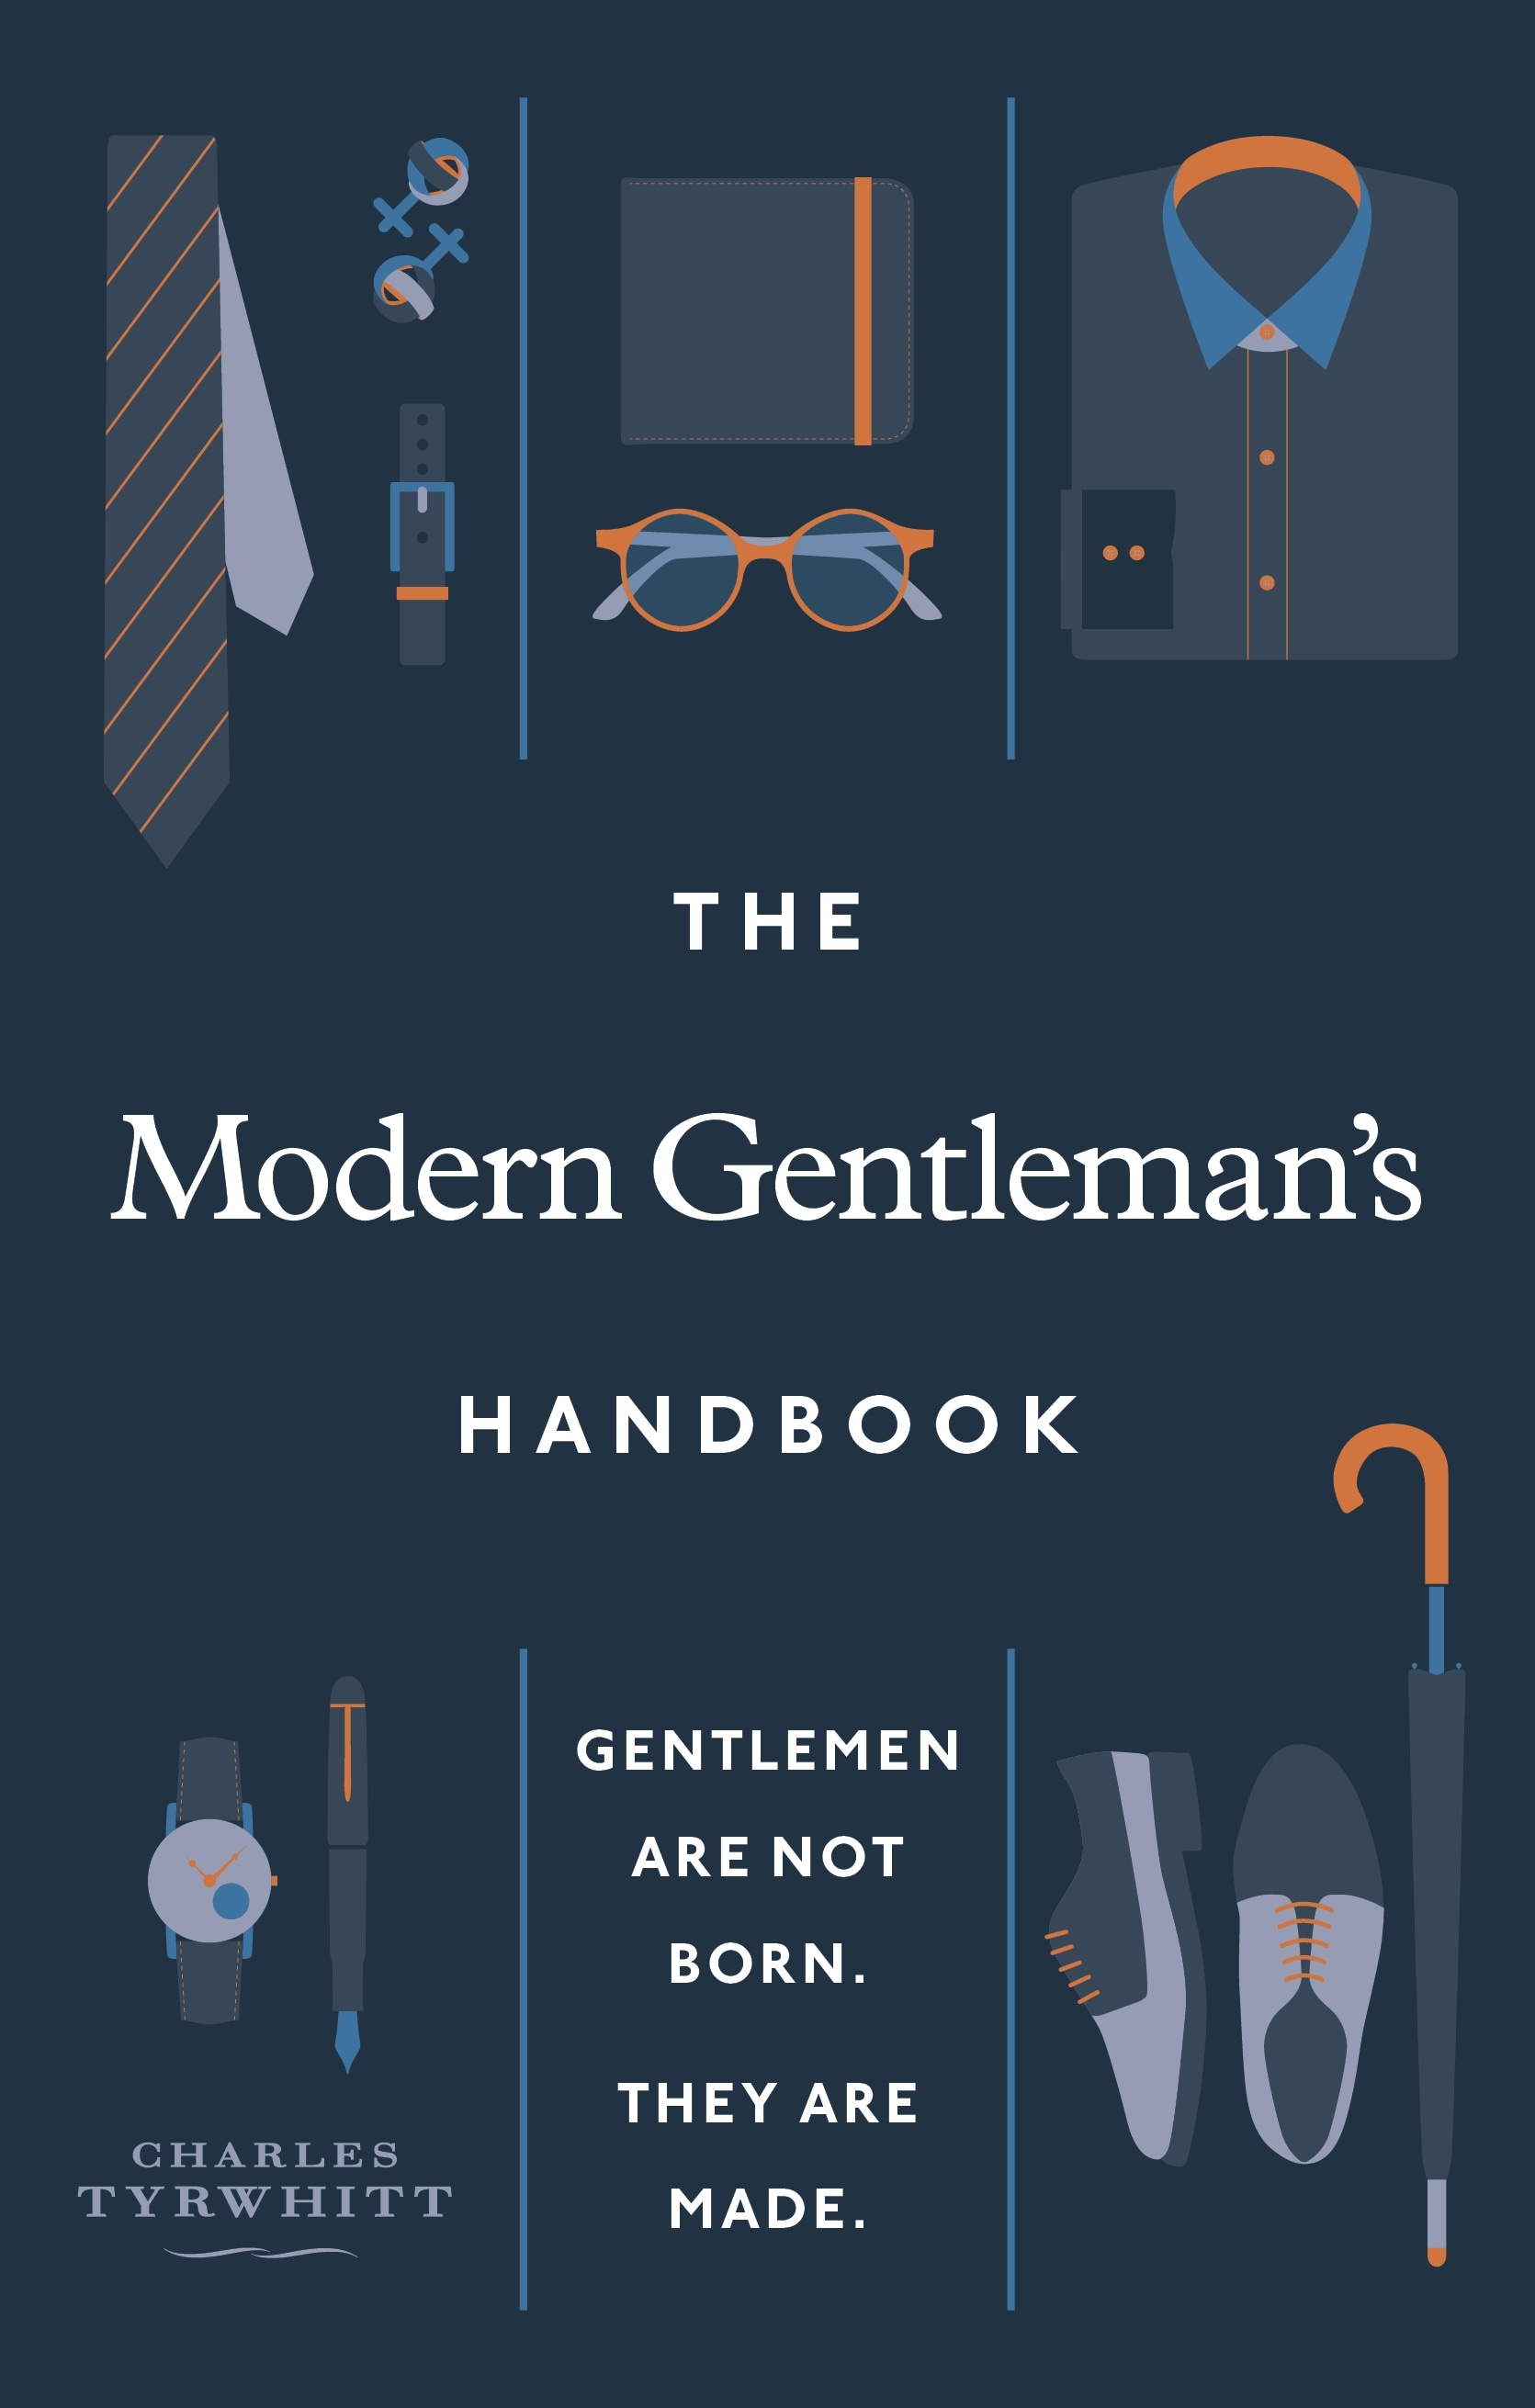 Book “The Modern Gentleman’s Handbook” by Charles Tyrwhitt — October 7, 2021